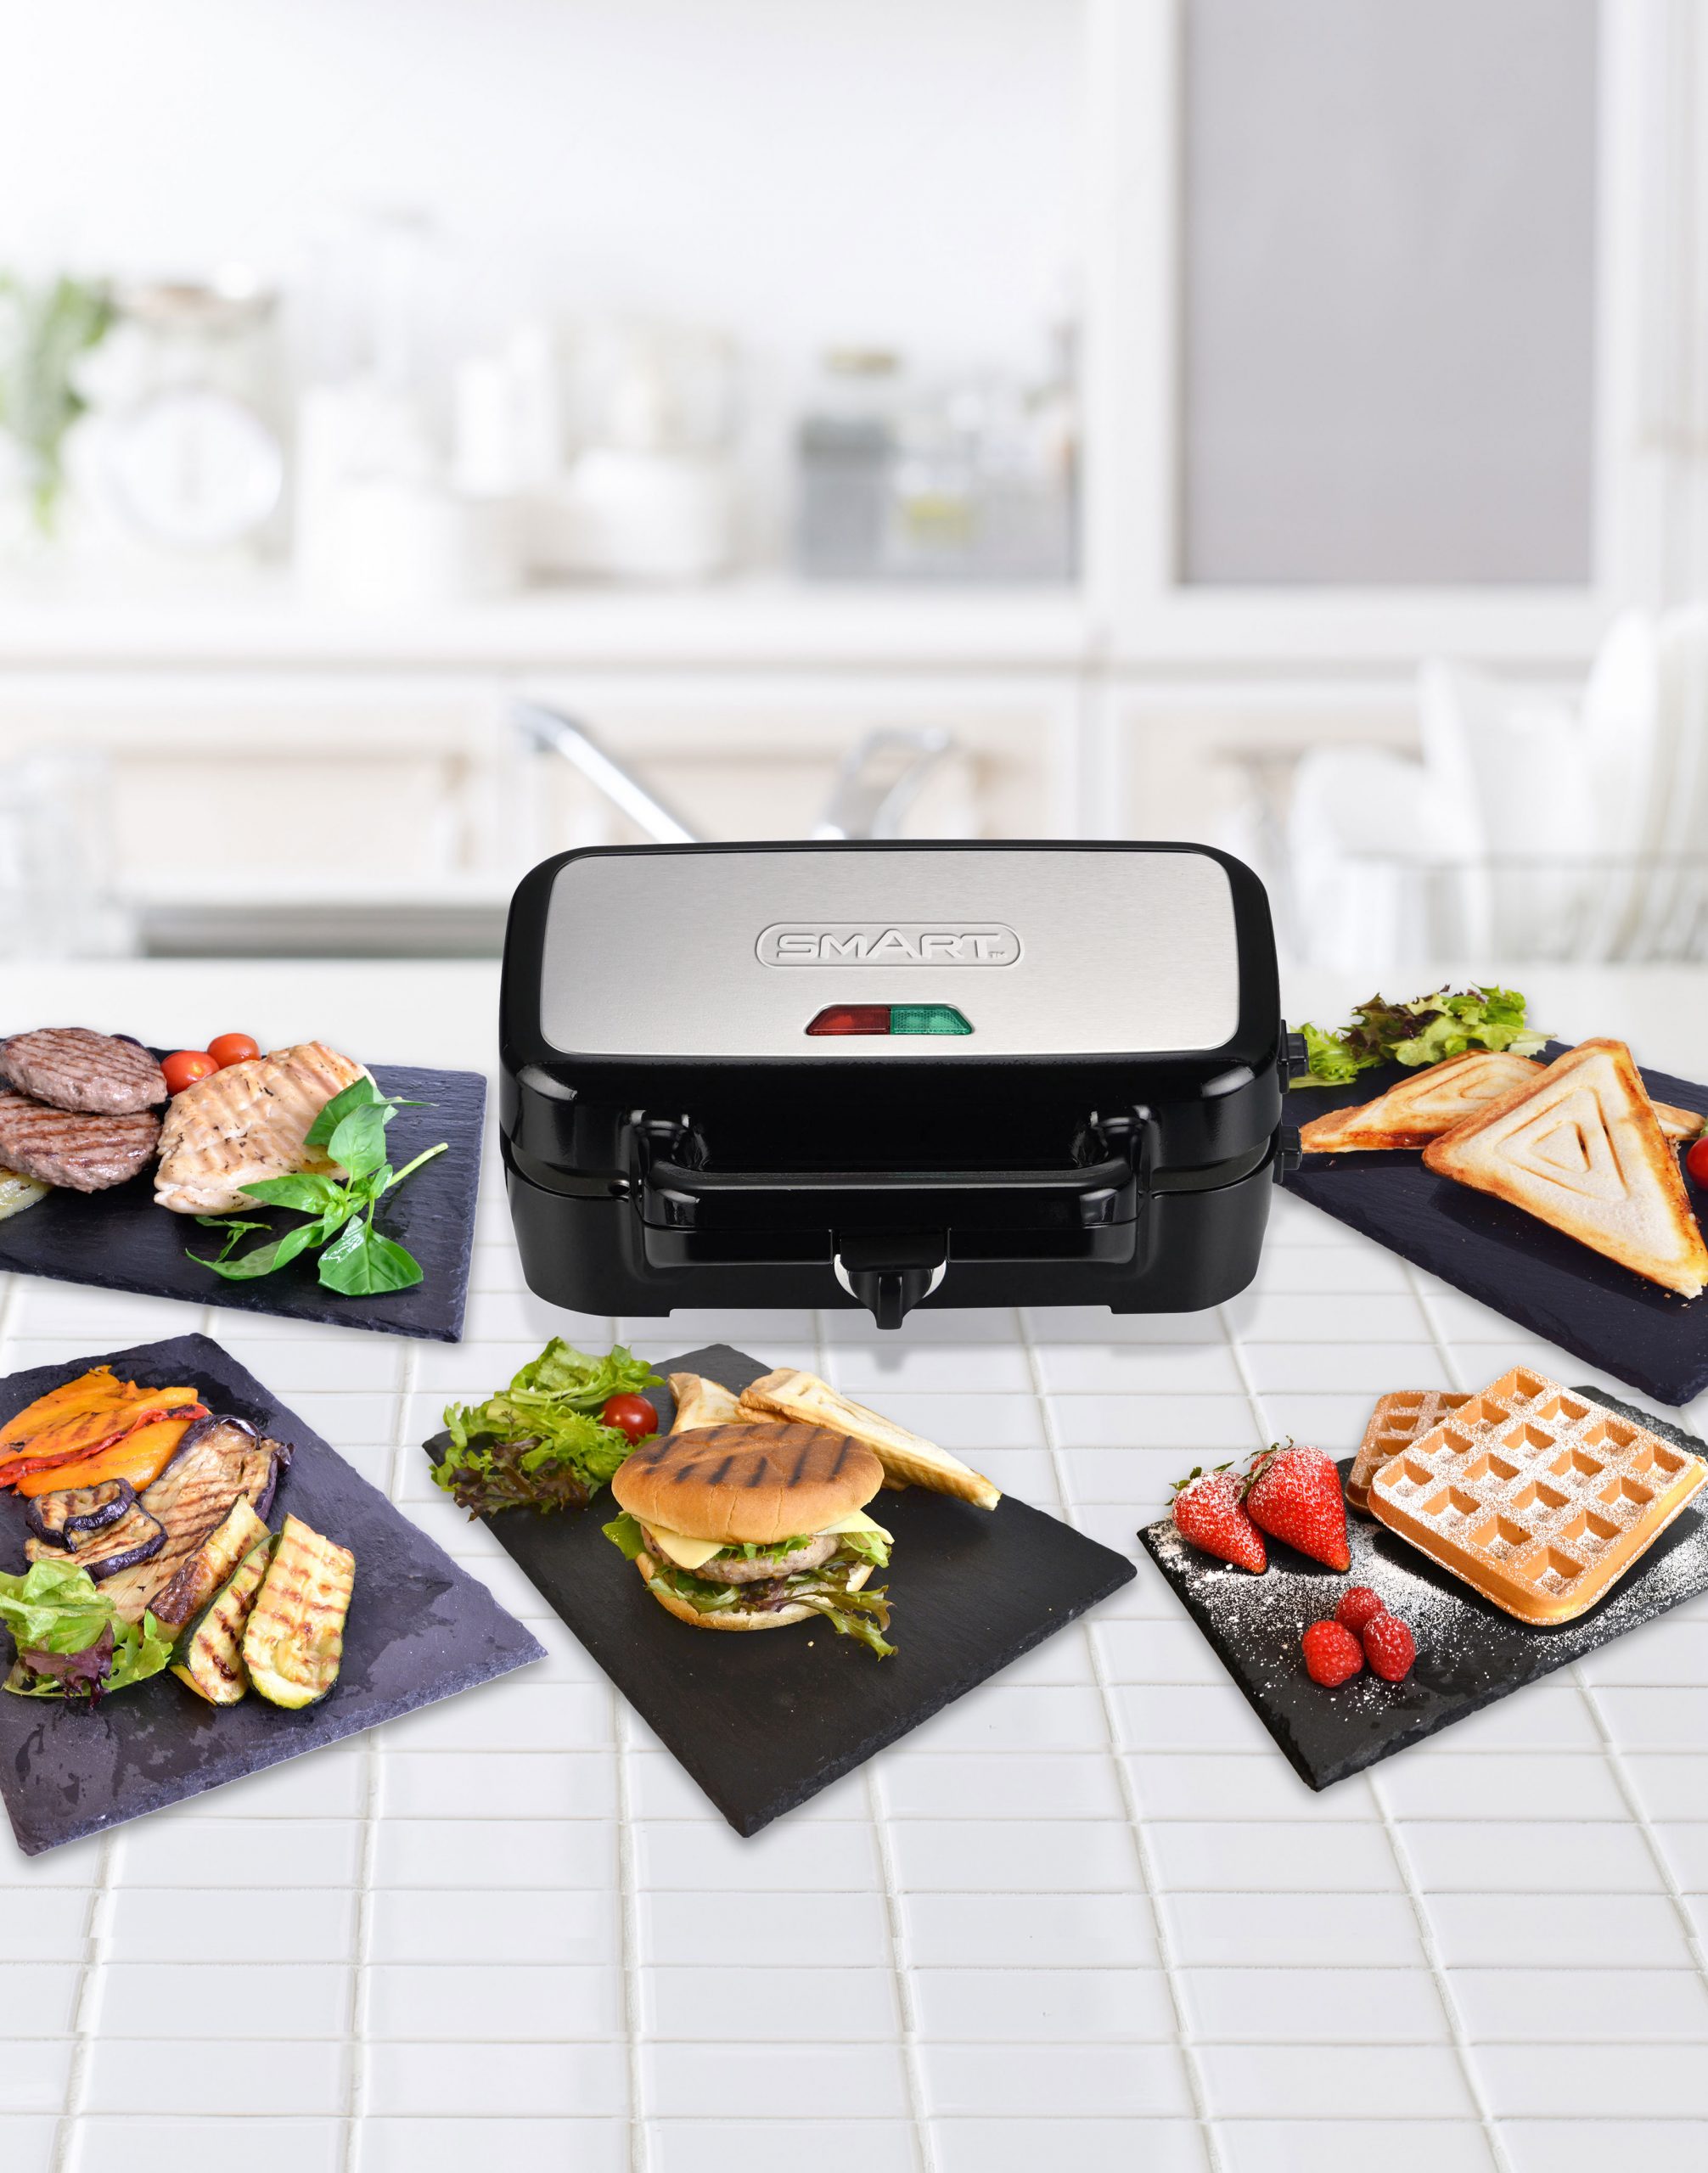 Multifonction 3 en 1 Fiesta machine à sandwich Maker, gaufres, gril de contact plaques compatibles au lave-vaisselle et antiadhésives 